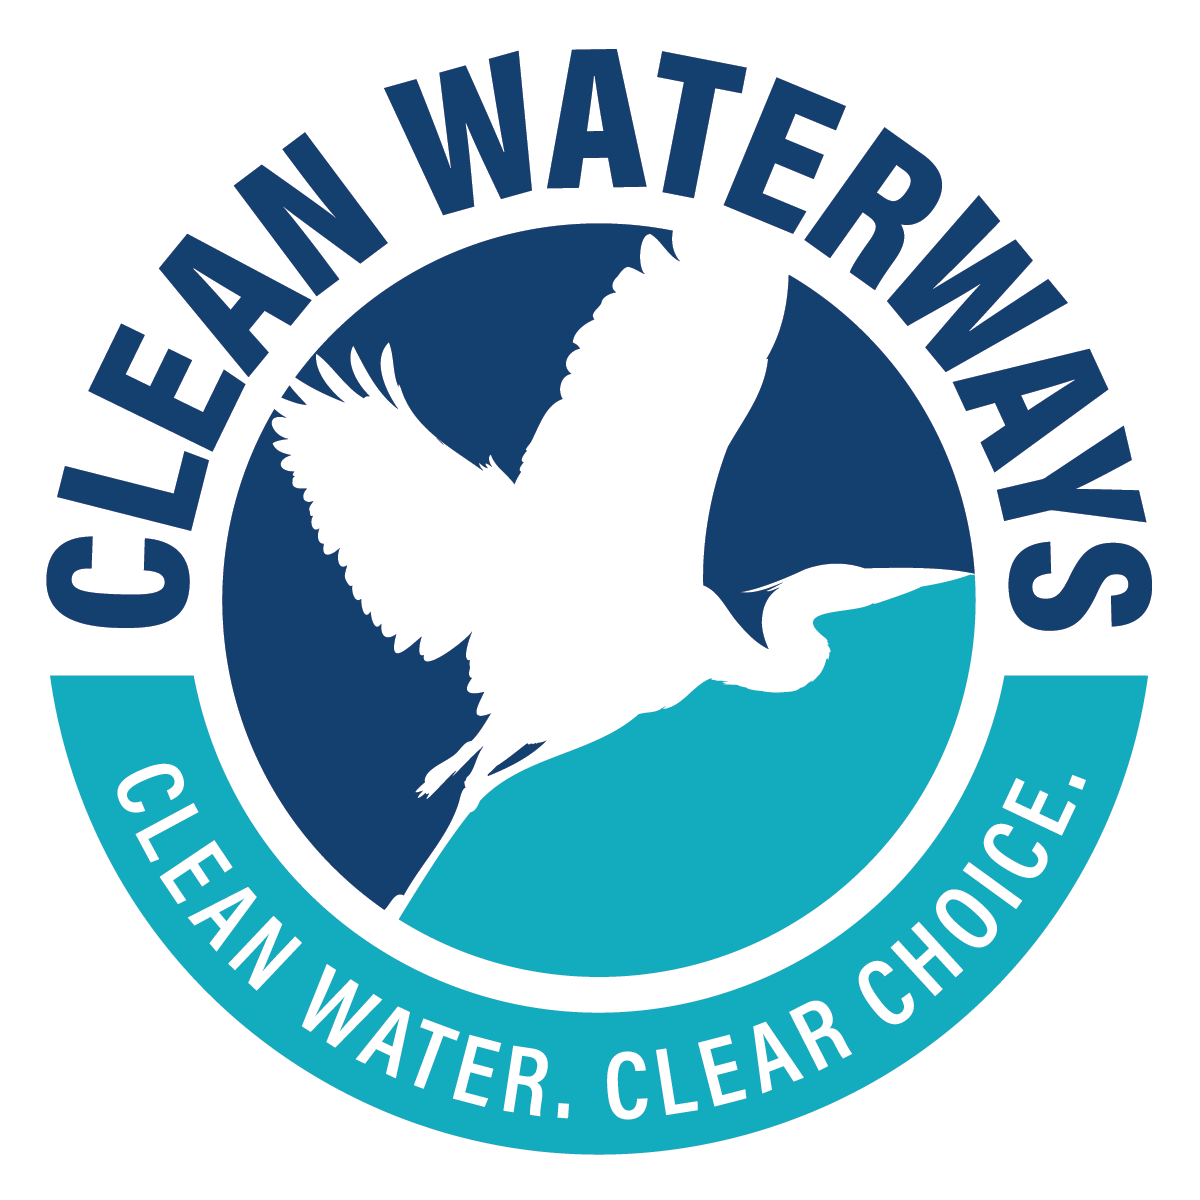 Clean Water, Clear Choice logo